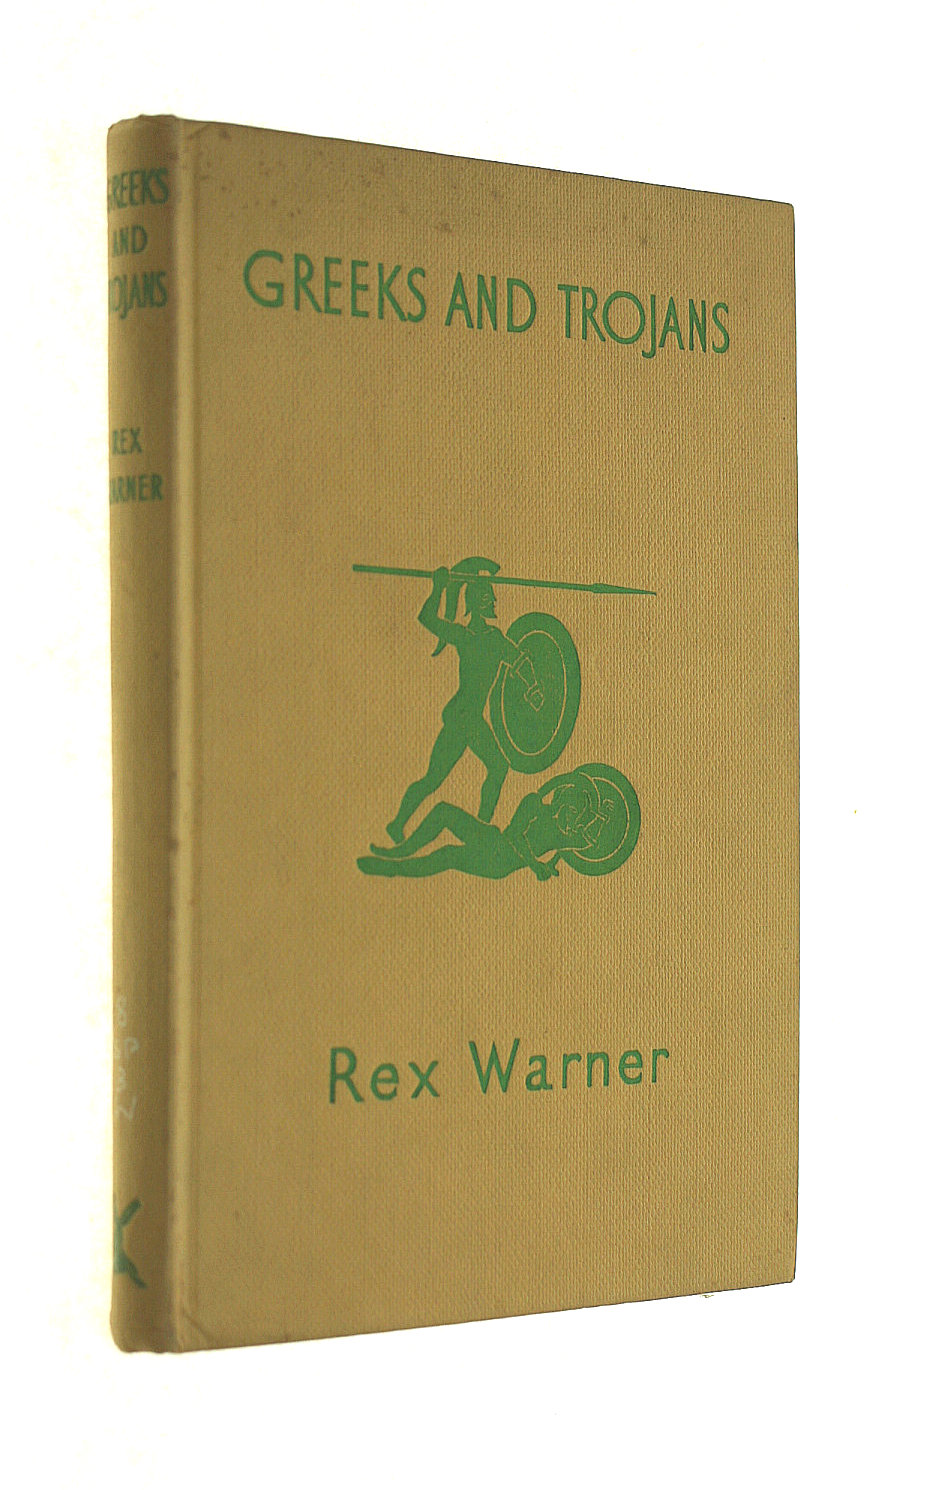 WARNER, REX - Greeks and Trojans